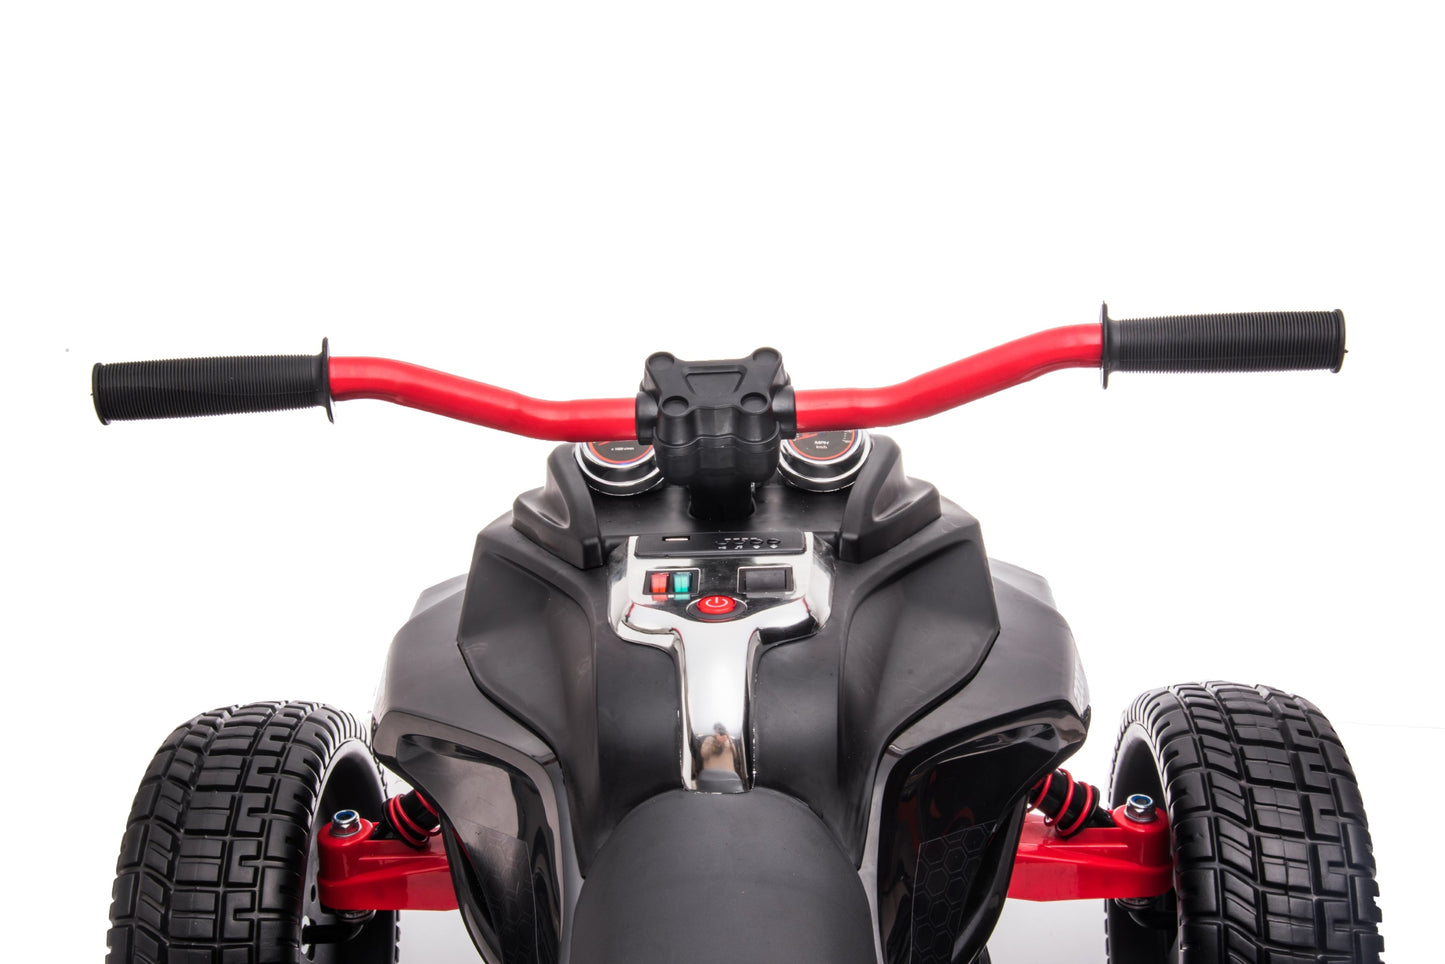 12V Freddo Spider 3 Wheel Motorcycle Trike 2 Seater